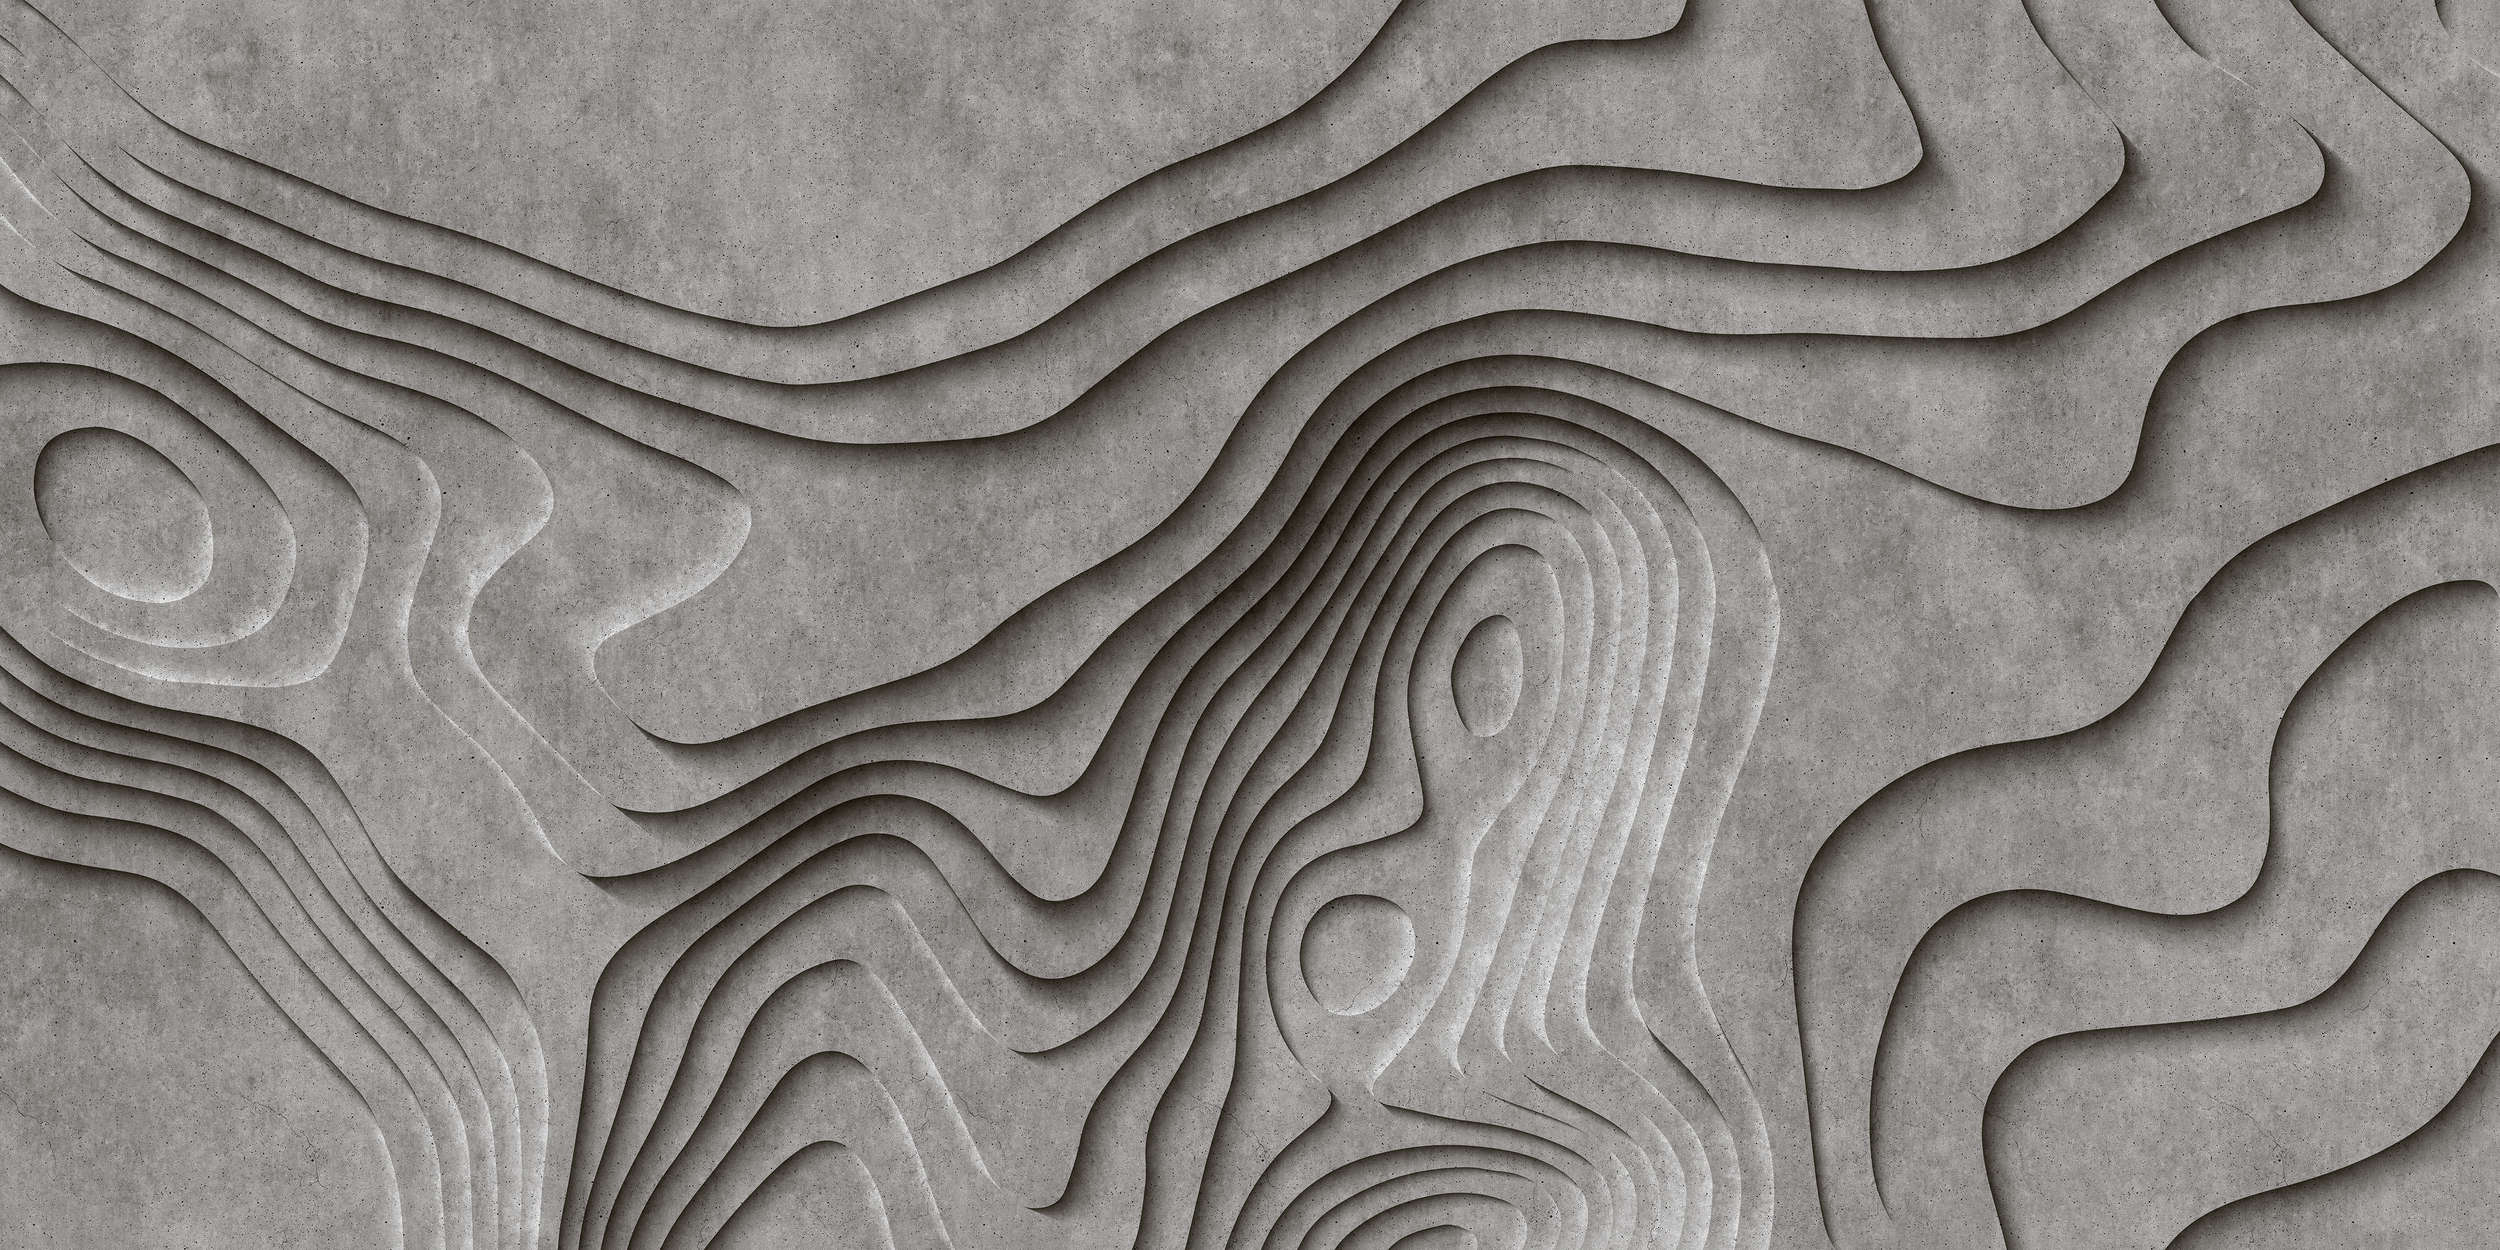             Canyon 1 - Cool 3D Concrete Canyon Wallpaper - Grey, Black | Pearl Smooth Non-woven
        